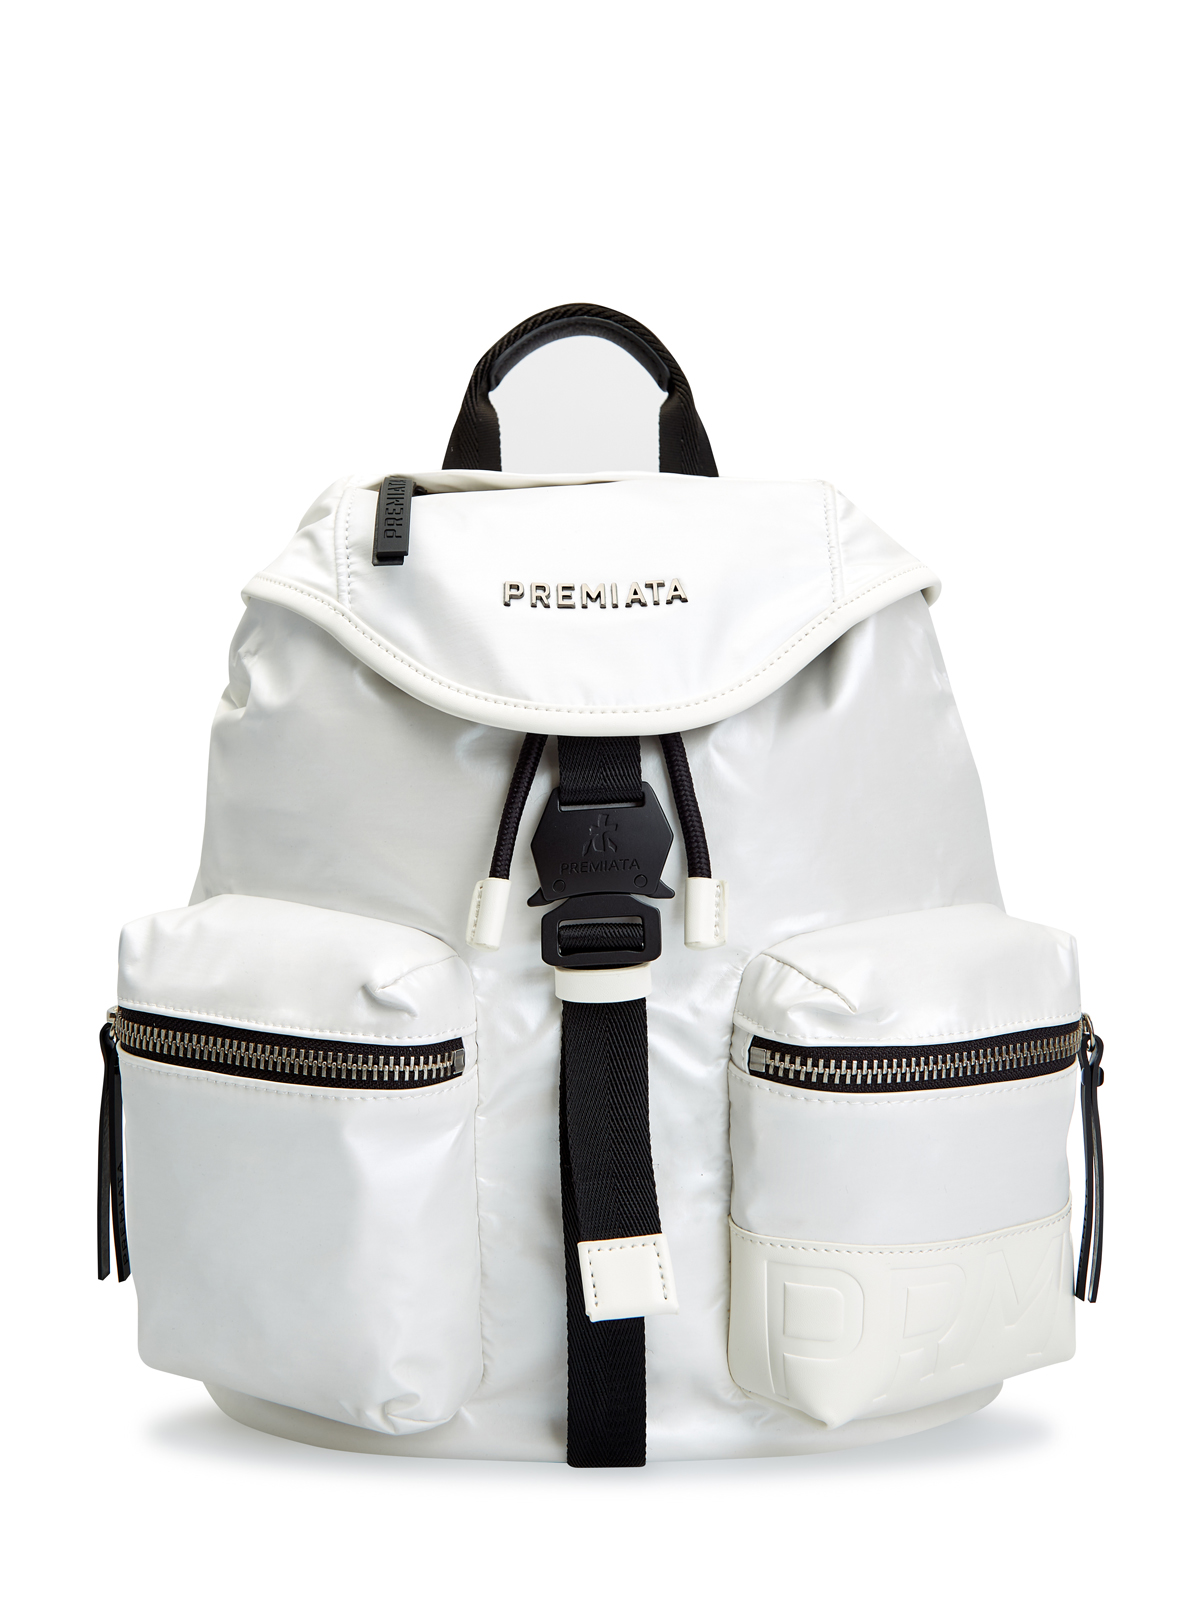 Функциональный рюкзак Lyn с кожаной отделкой и съемным ремнем PREMIATA, цвет белый, размер S;M - фото 1